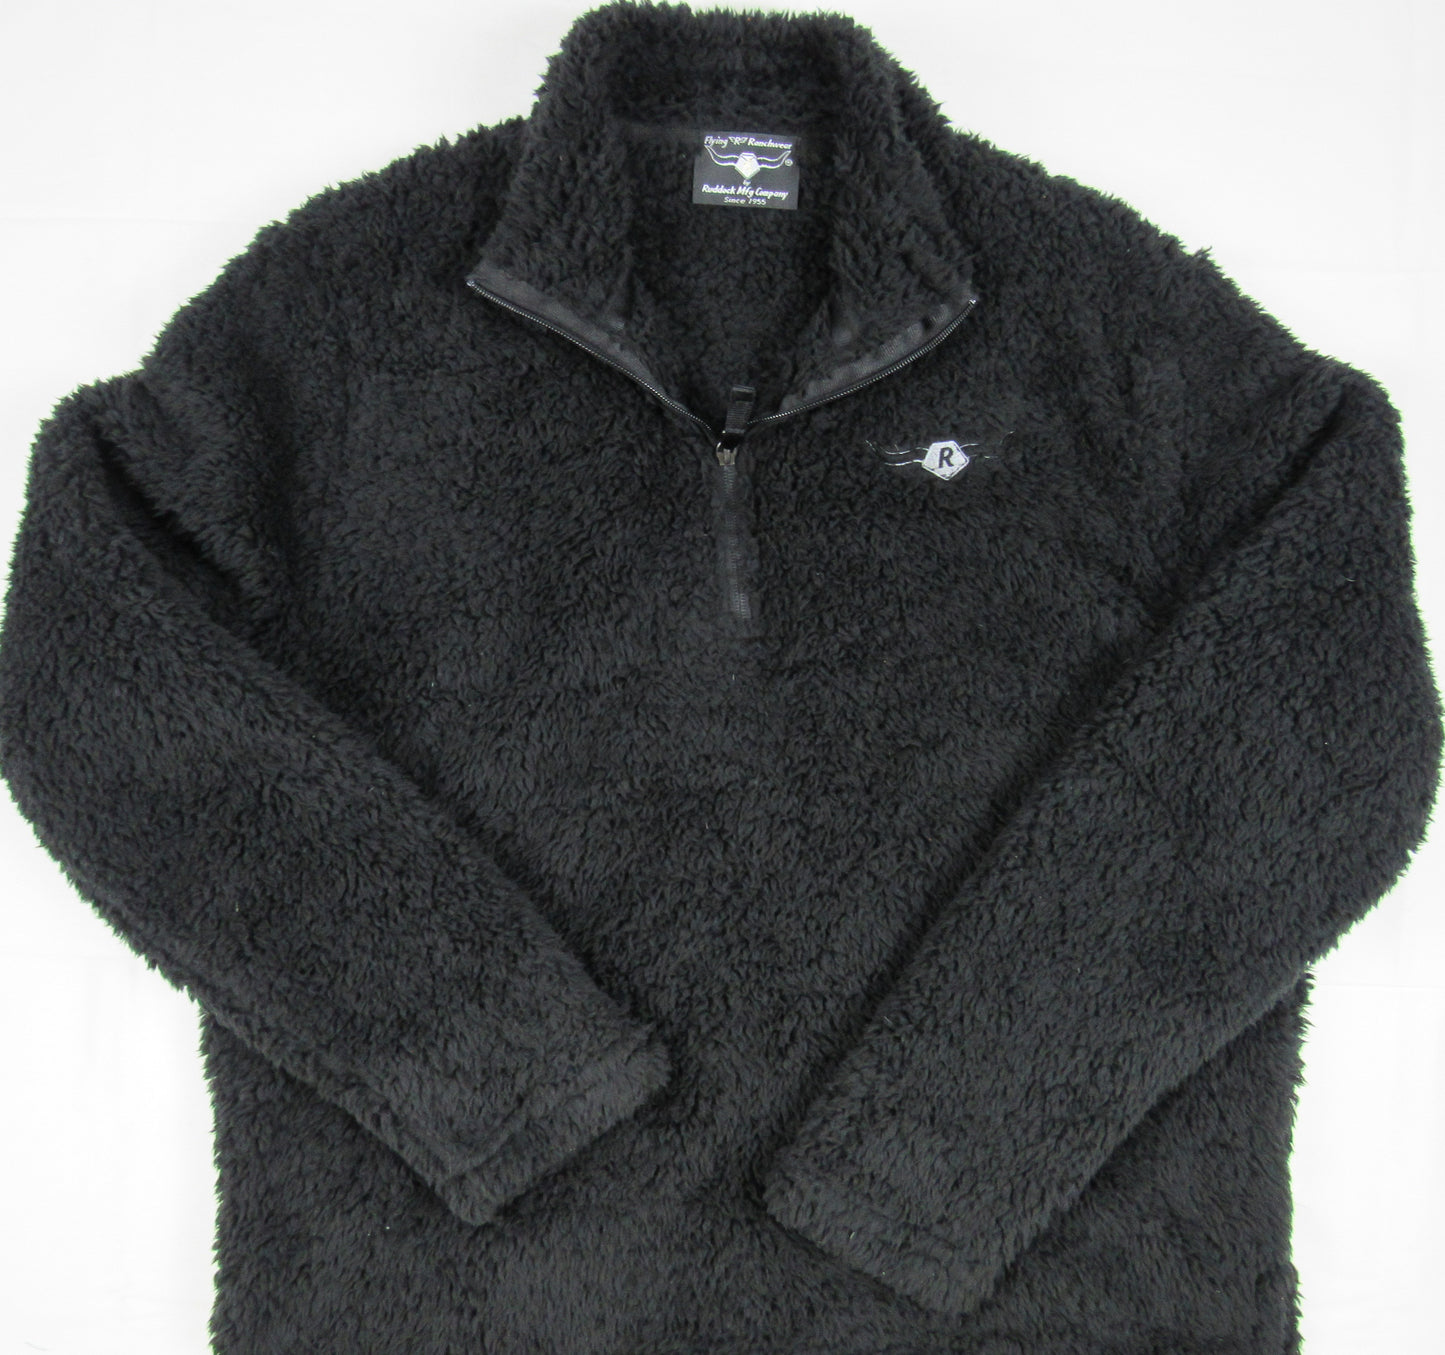 Deep Black sherpa fleece with 1/4 zipper by Flying R Ranchwear